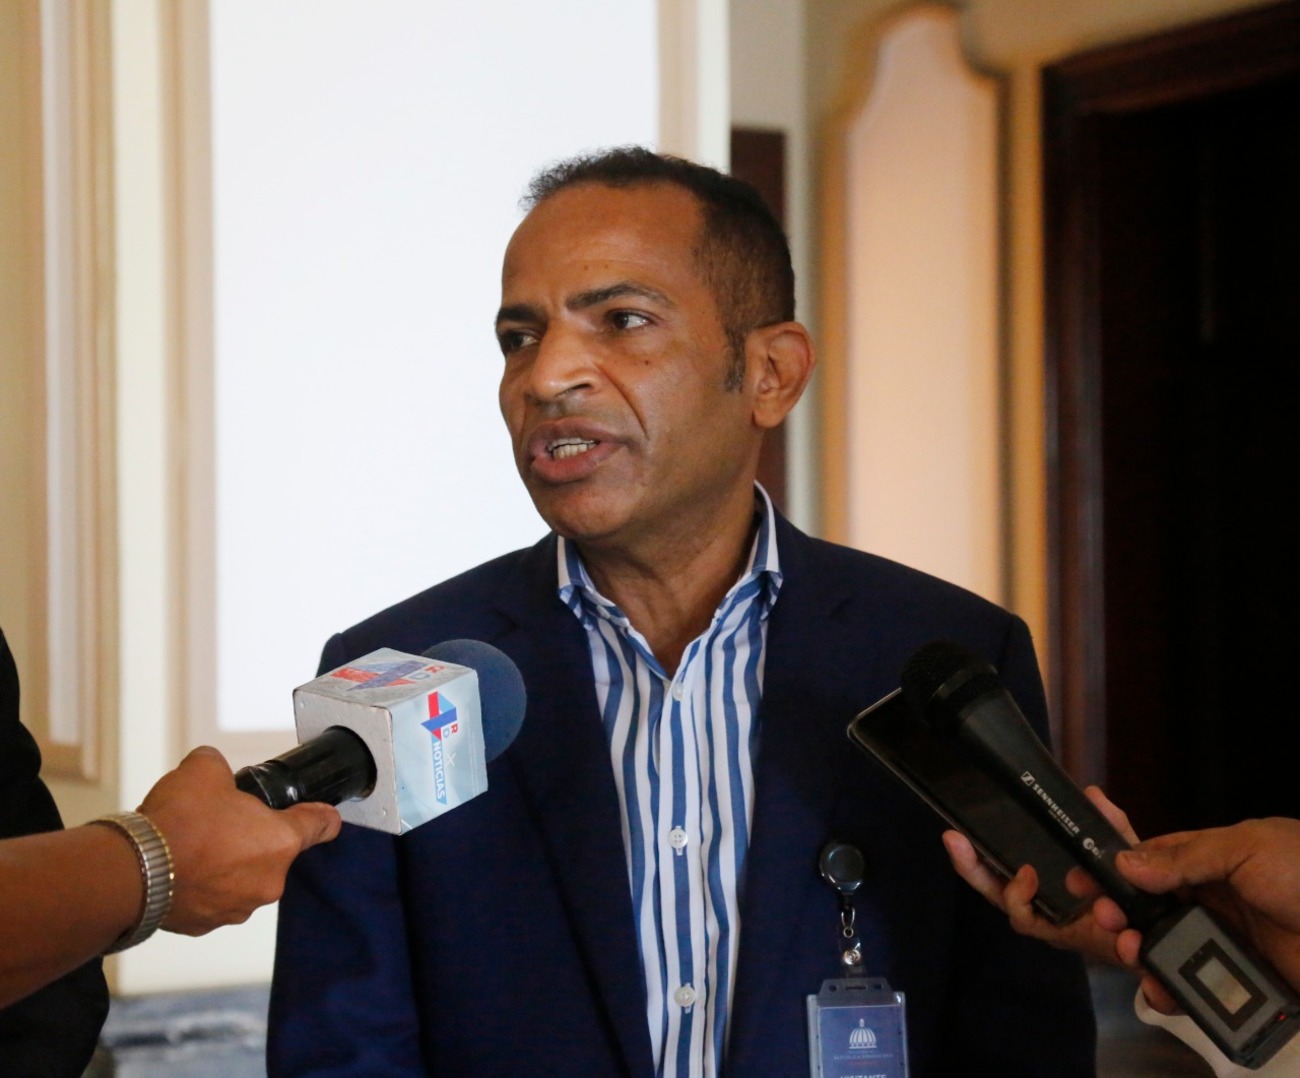 REPÚBLICA DOMINICANA: Dirigentes de transporte visitan al presidente para apoyar modernización del sector